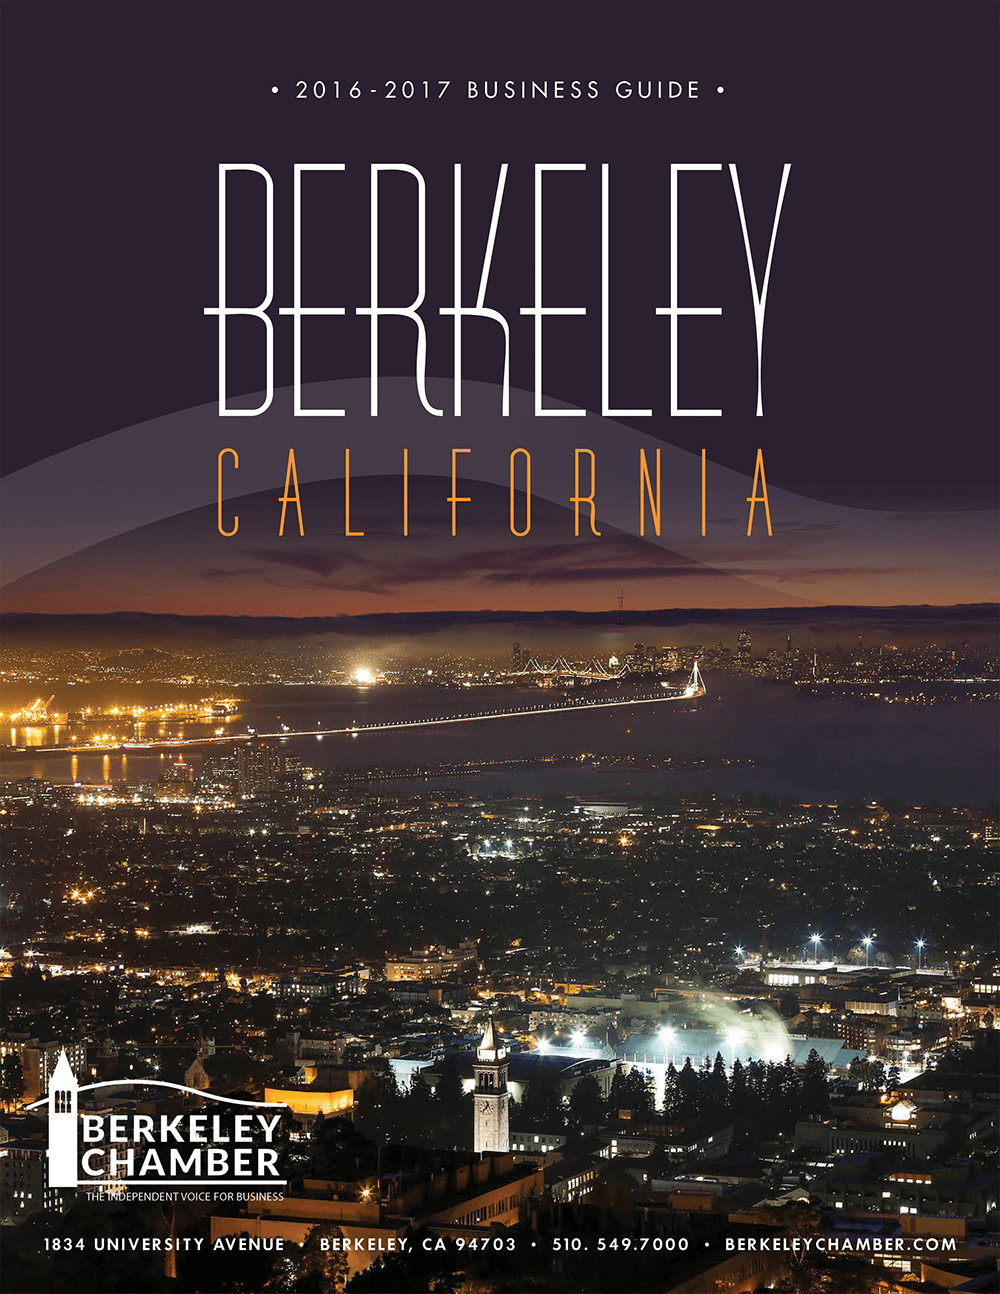 “Berkeley